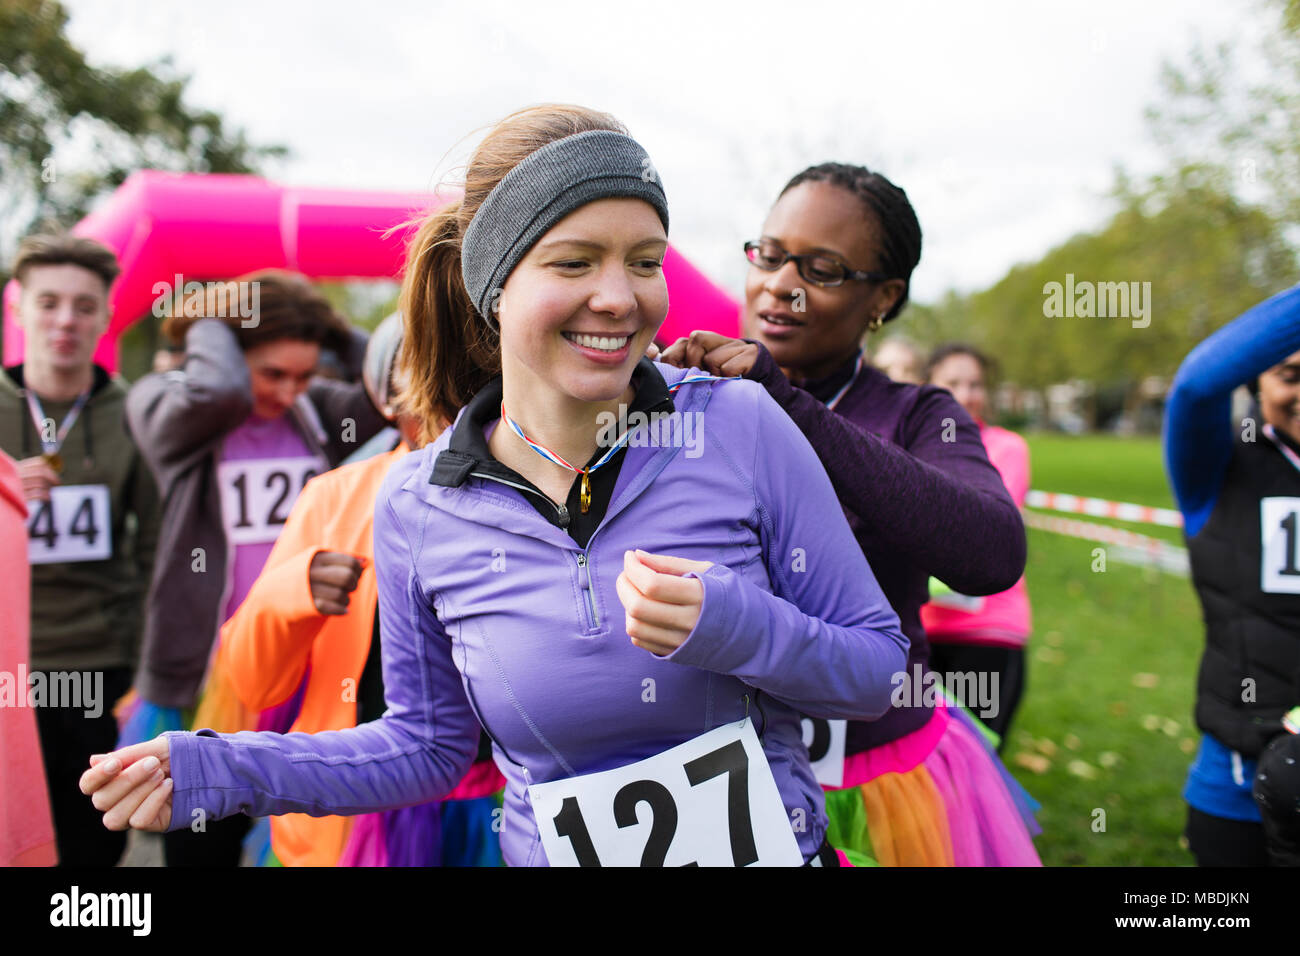 Frau pinning Marathon bib auf Freund an der Nächstenliebe laufen im Park Stockfoto